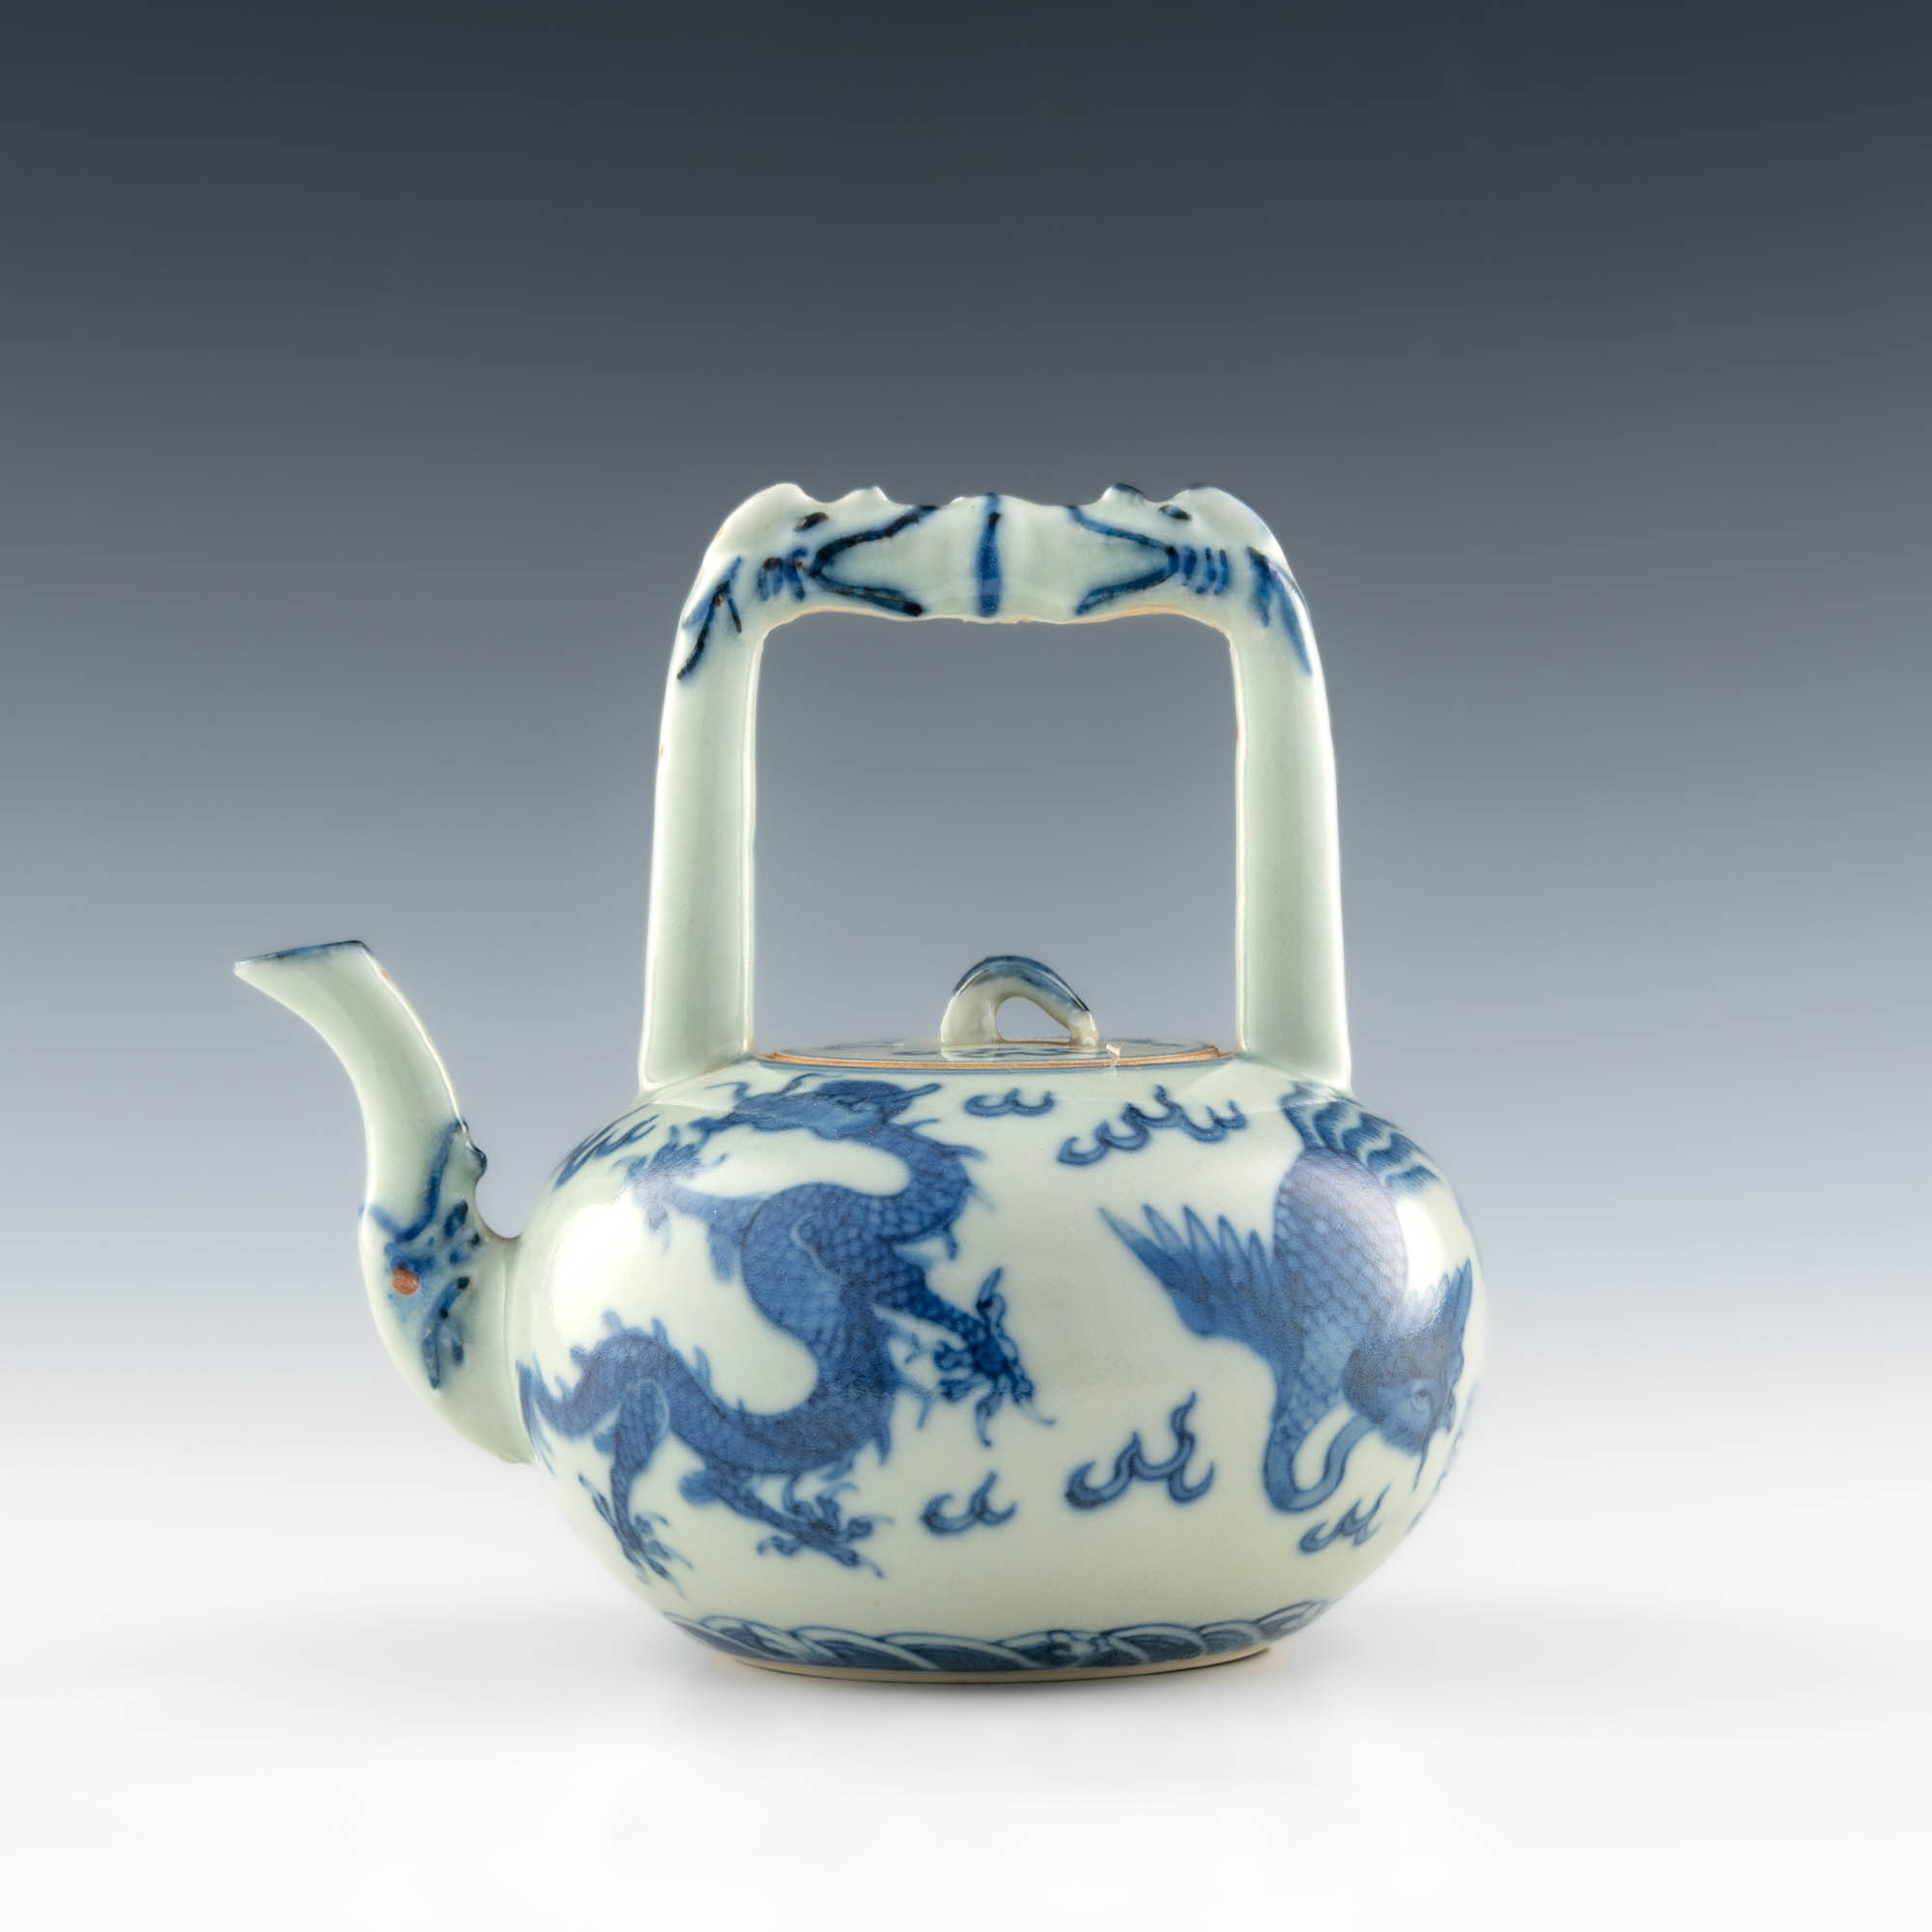 十九世紀青花龍鳳紋提梁壺A Chinese blue and white porcelain teapot